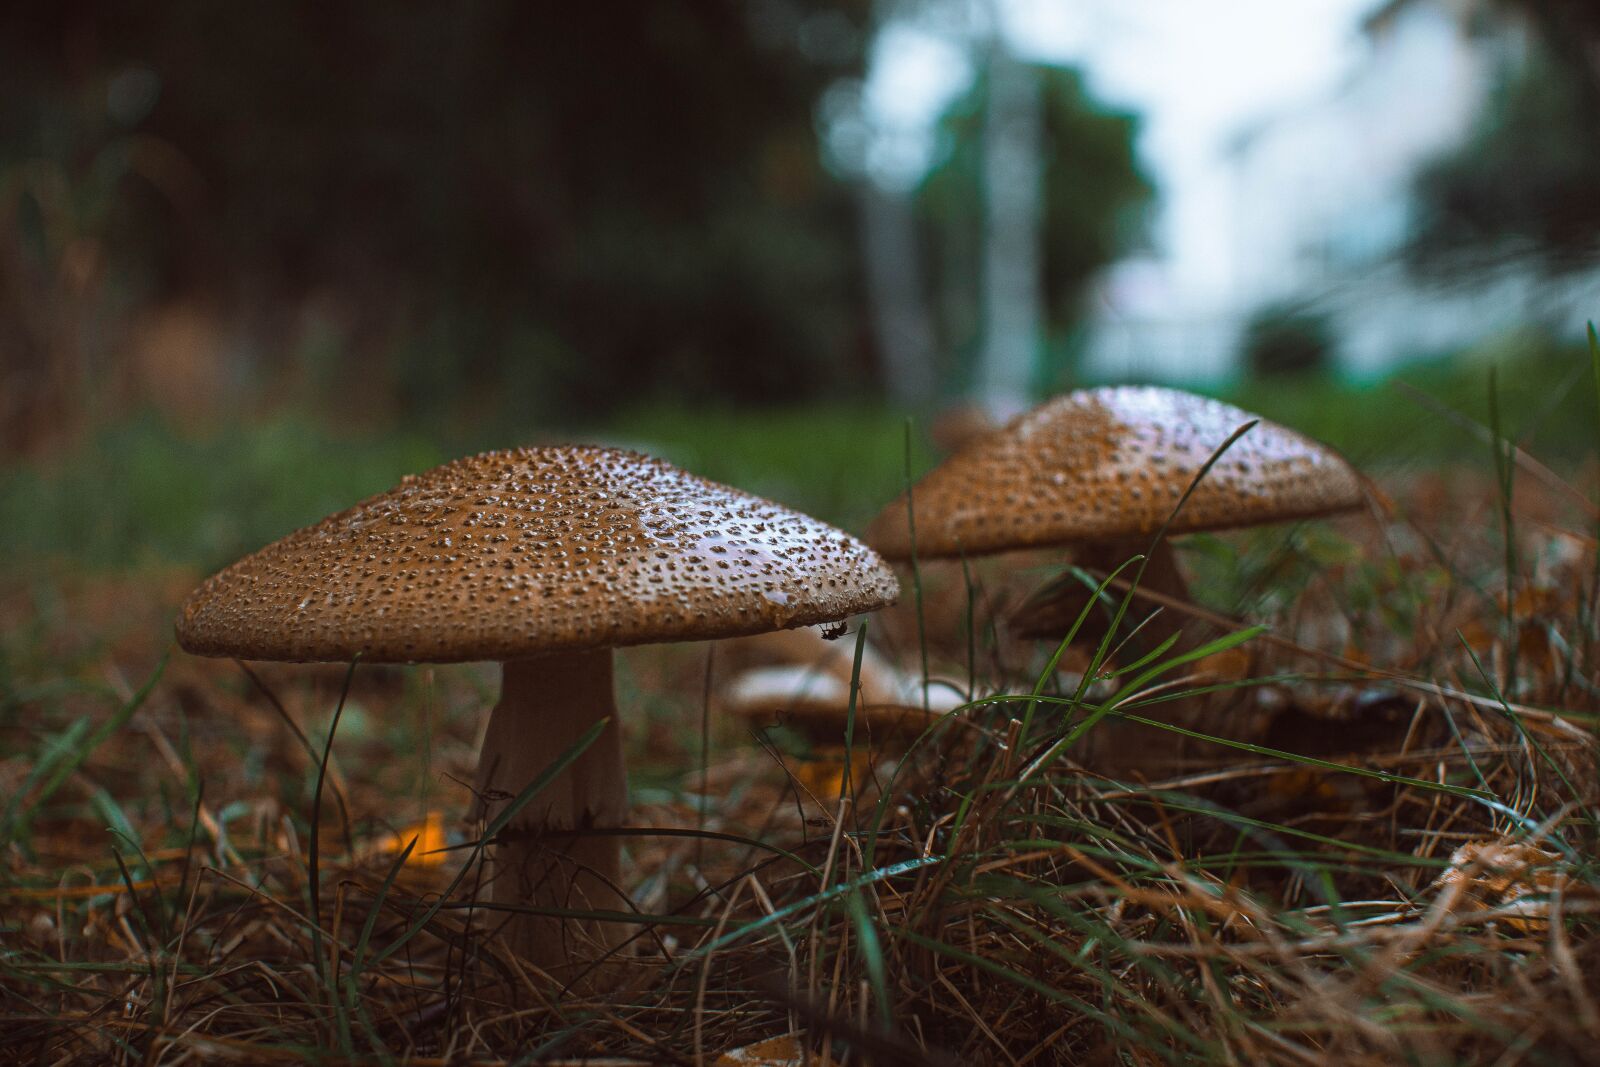 Sony SLT-A68 sample photo. Mushroom, autumn, finnish photography